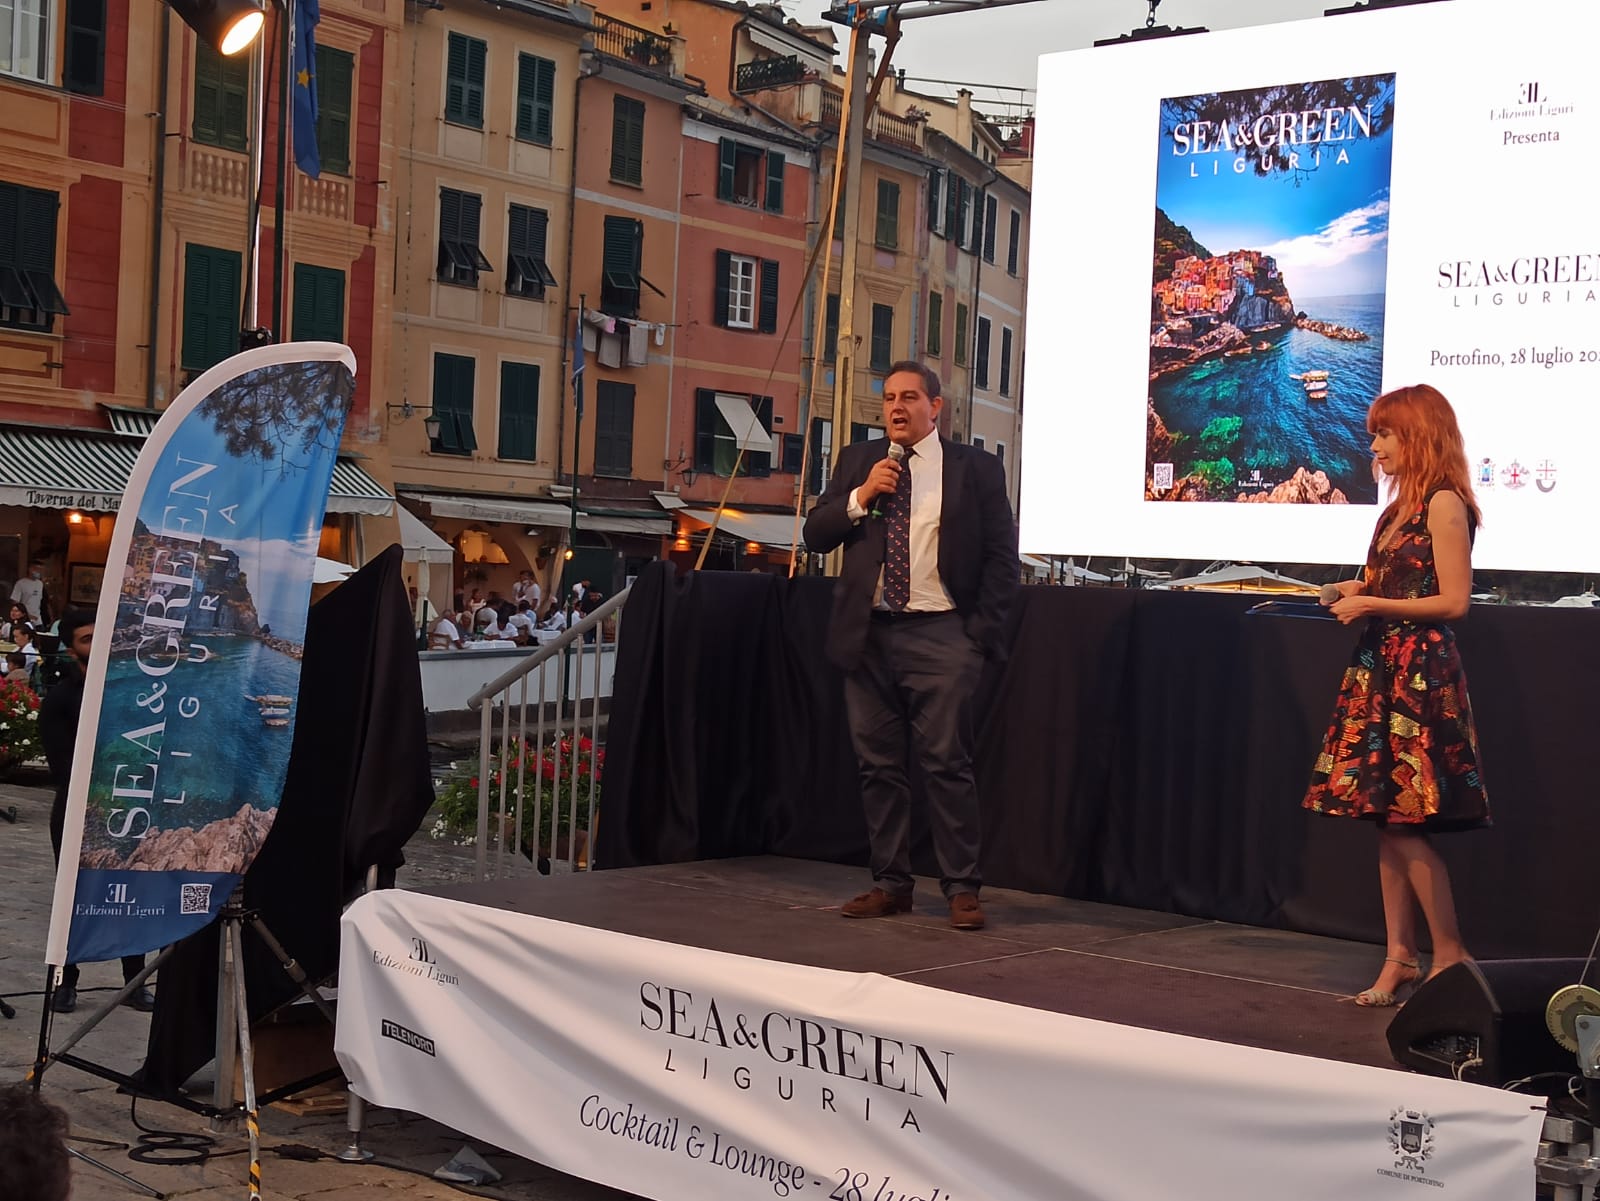 Portofino ospita la presentazione di Sea&Green Liguria